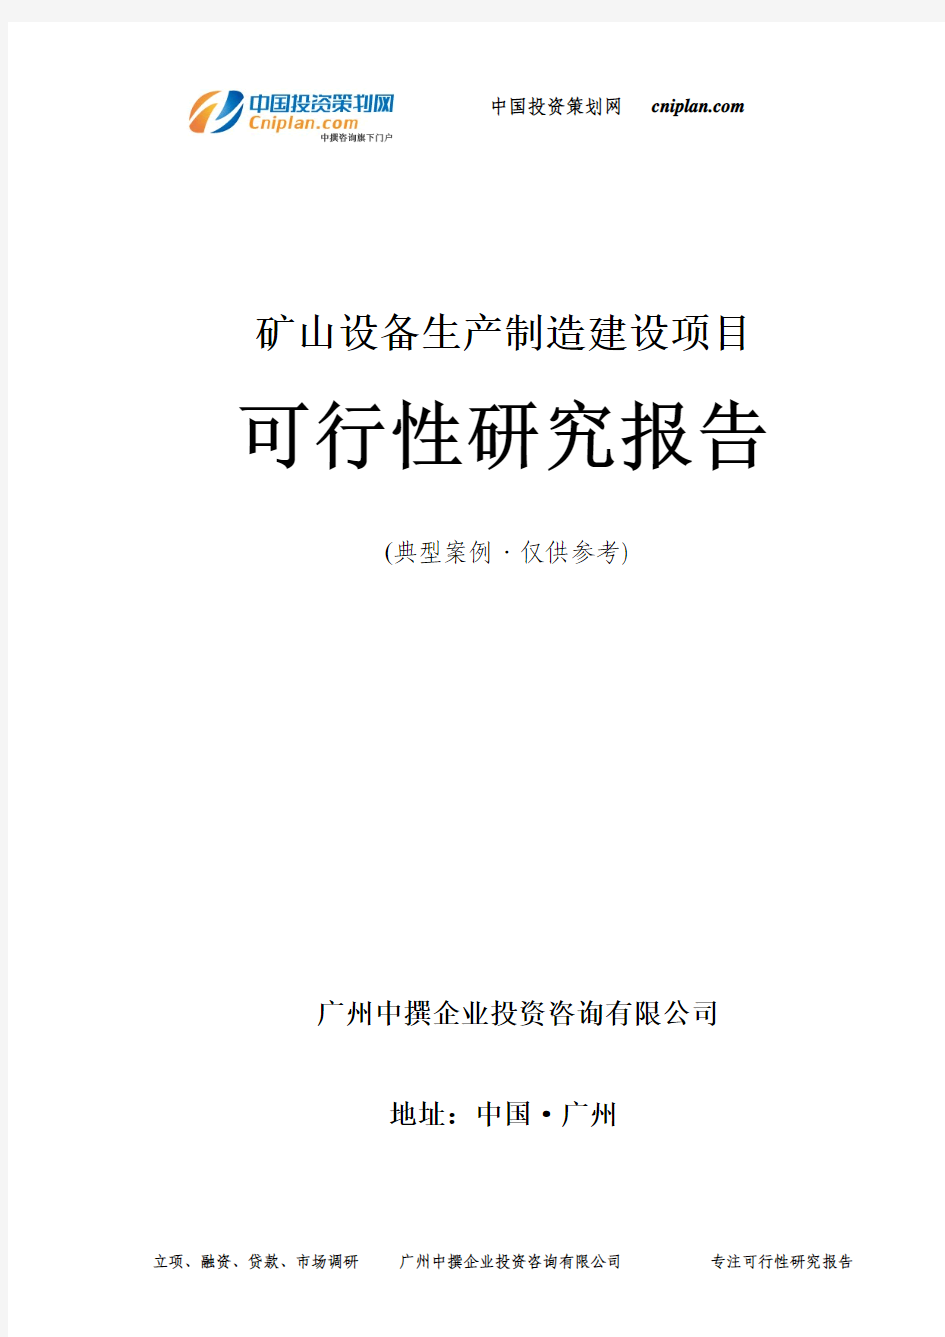 矿山设备生产制造投资建设项目可行性研究报告-广州中撰咨询